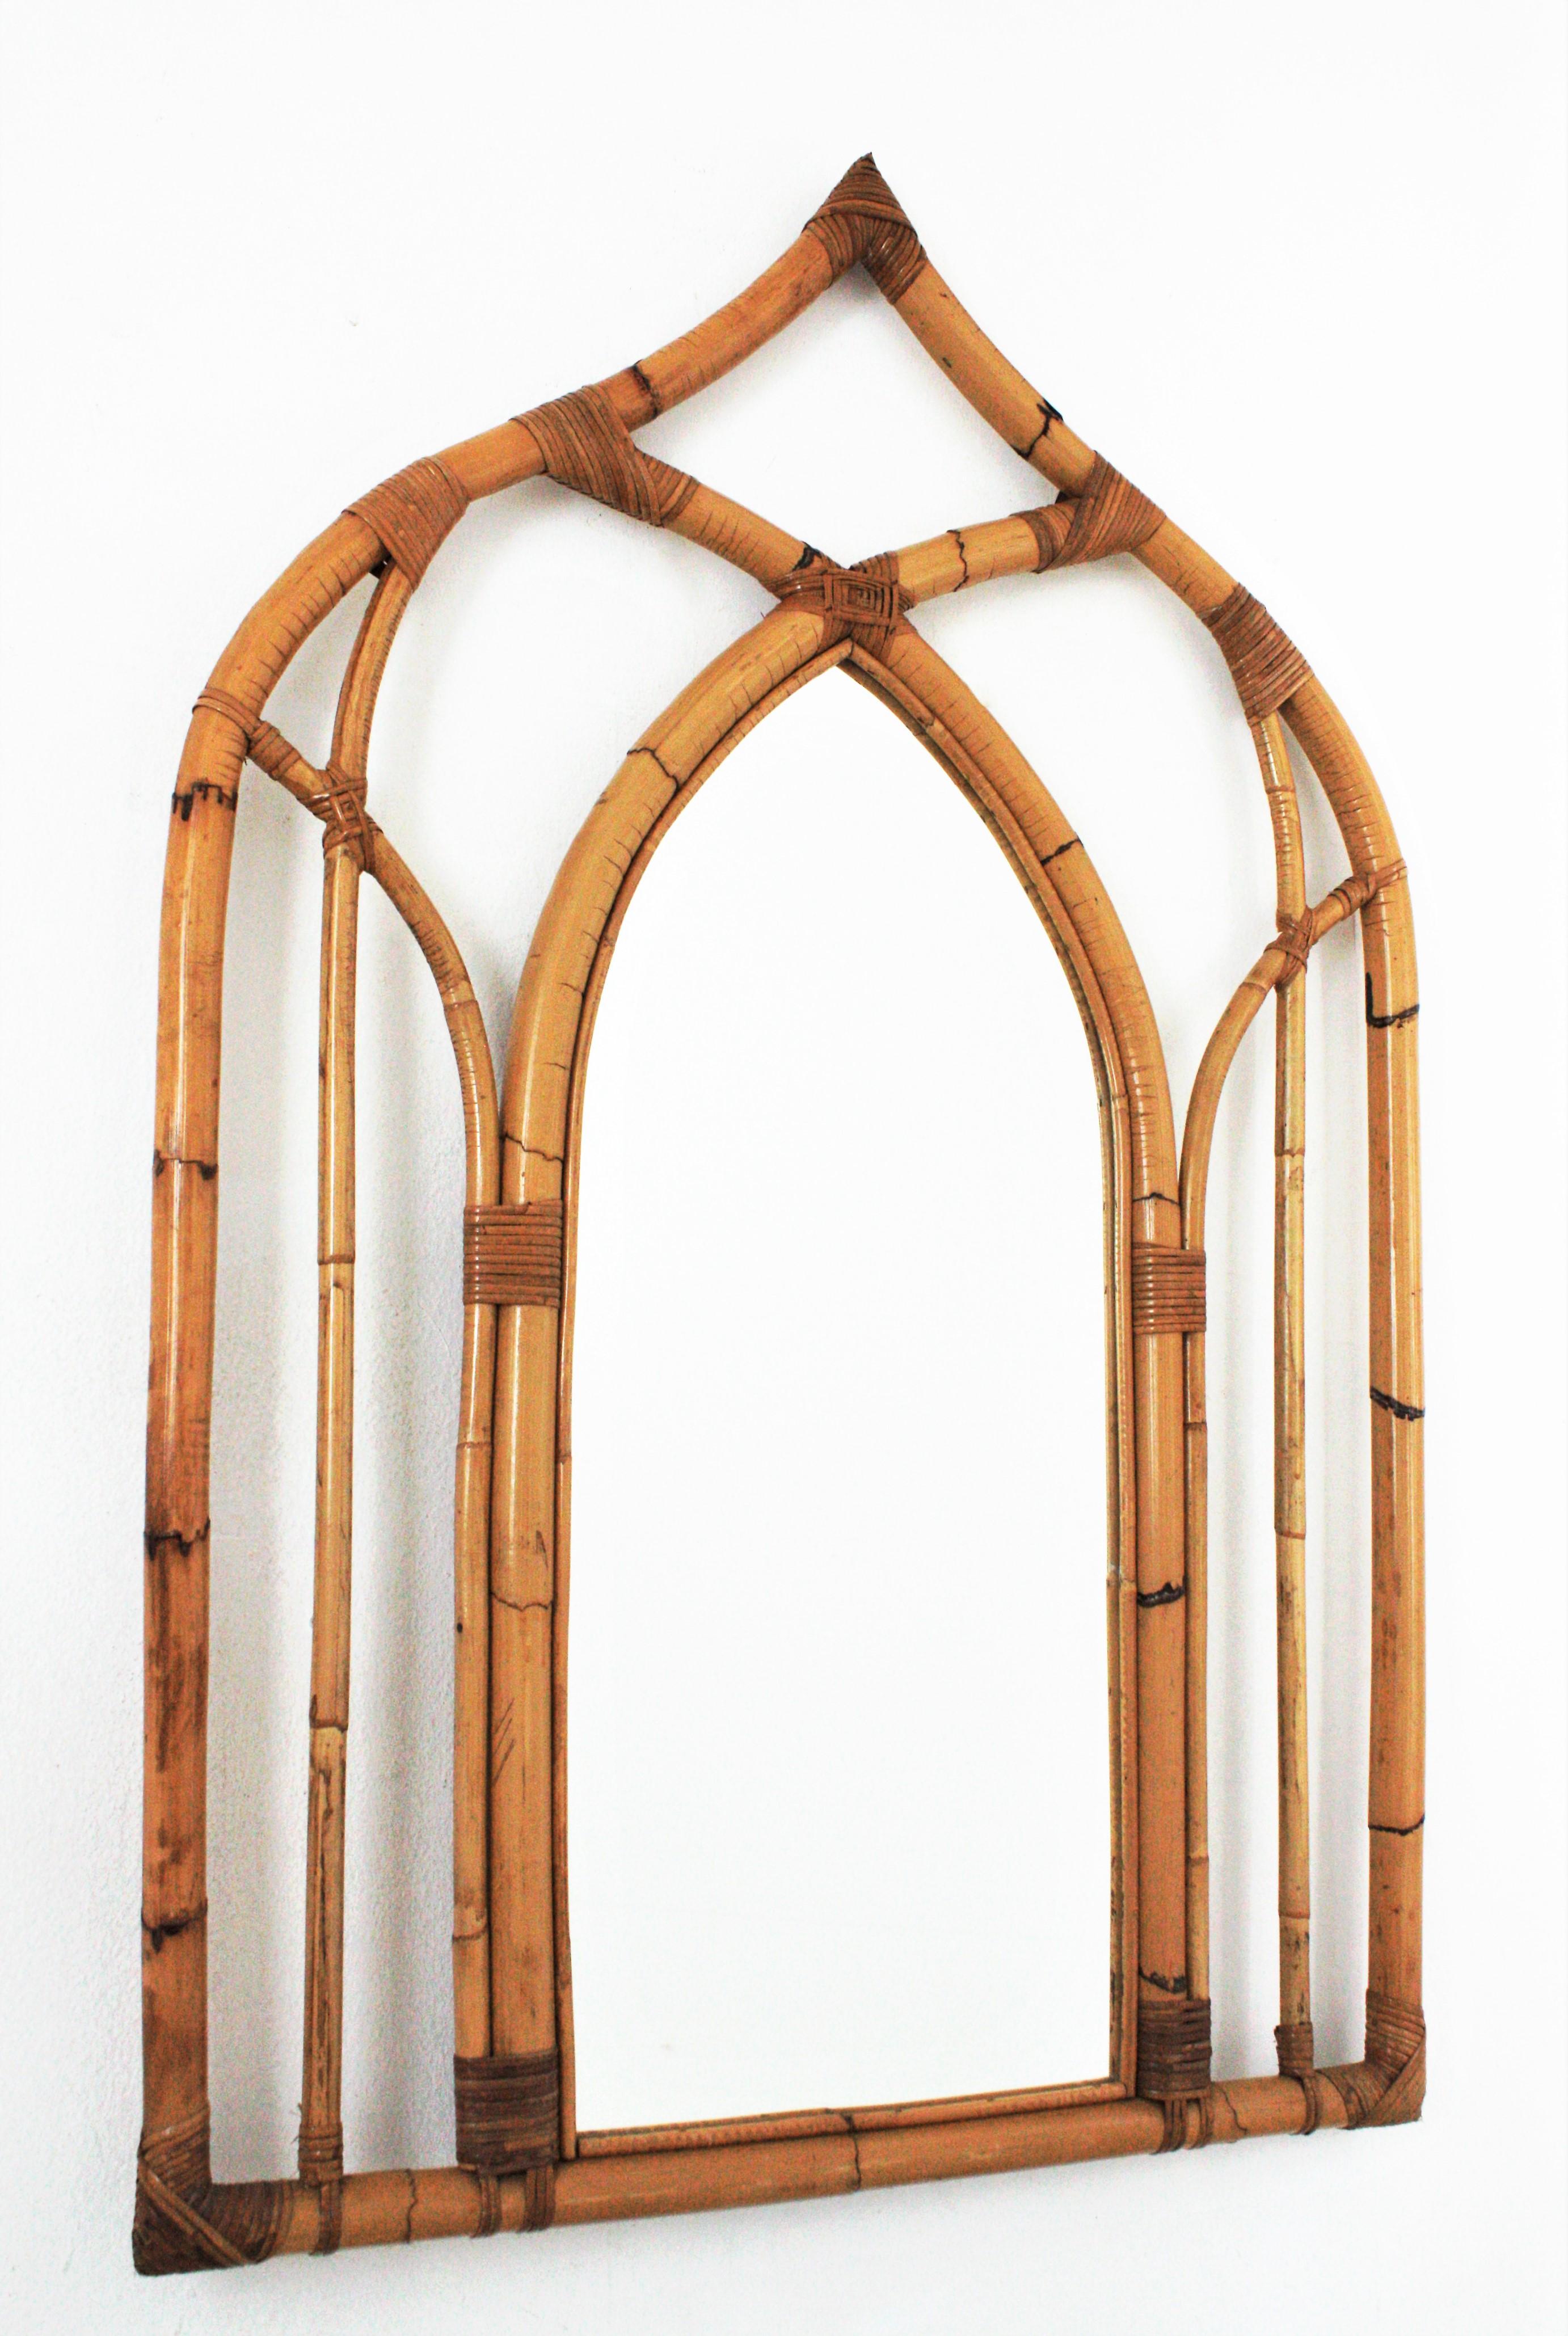 Großer Spiegel aus Bambus im arabischen Stil, Italien, 1970er Jahre.
Dieser Bambusspiegel hat arabische und gotische Akzente und den Geschmack italienischer Designs aus der Mitte des 20. Jahrhunderts.
Der Rahmen wurde in Handarbeit aus